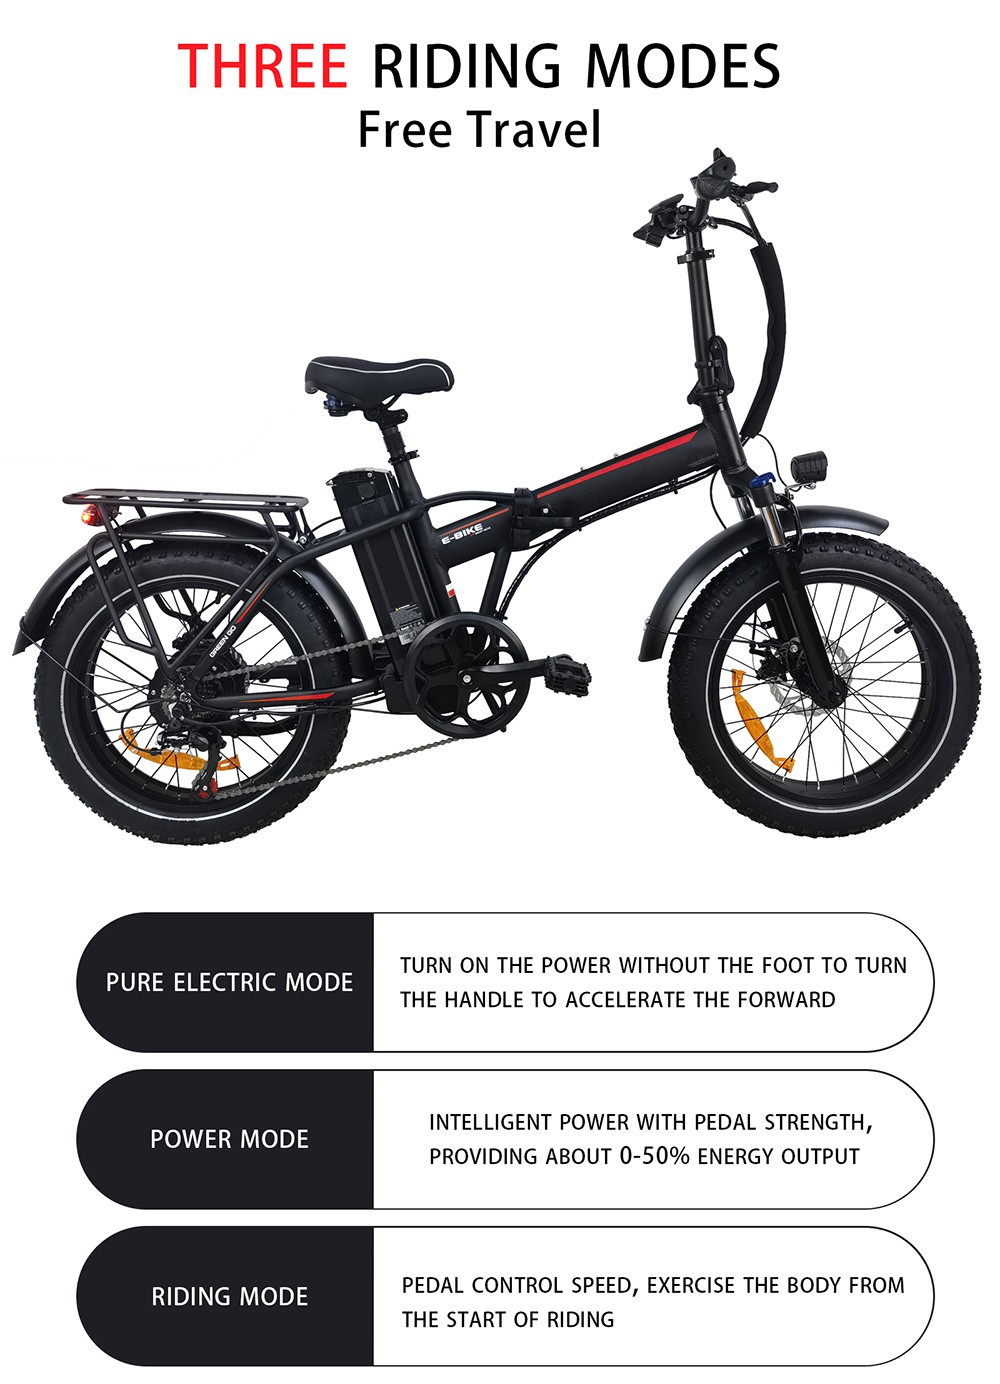 Vélo électrique BAOLUJIE DZ2031, moteur 500 W, batterie 48 V 13 Ah, pneu 20 x 4.0 pouces, portée 35-45 km, vitesse maximale 40 km/h, frein à disque mécanique SHIMANO à 7 vitesses – Vert